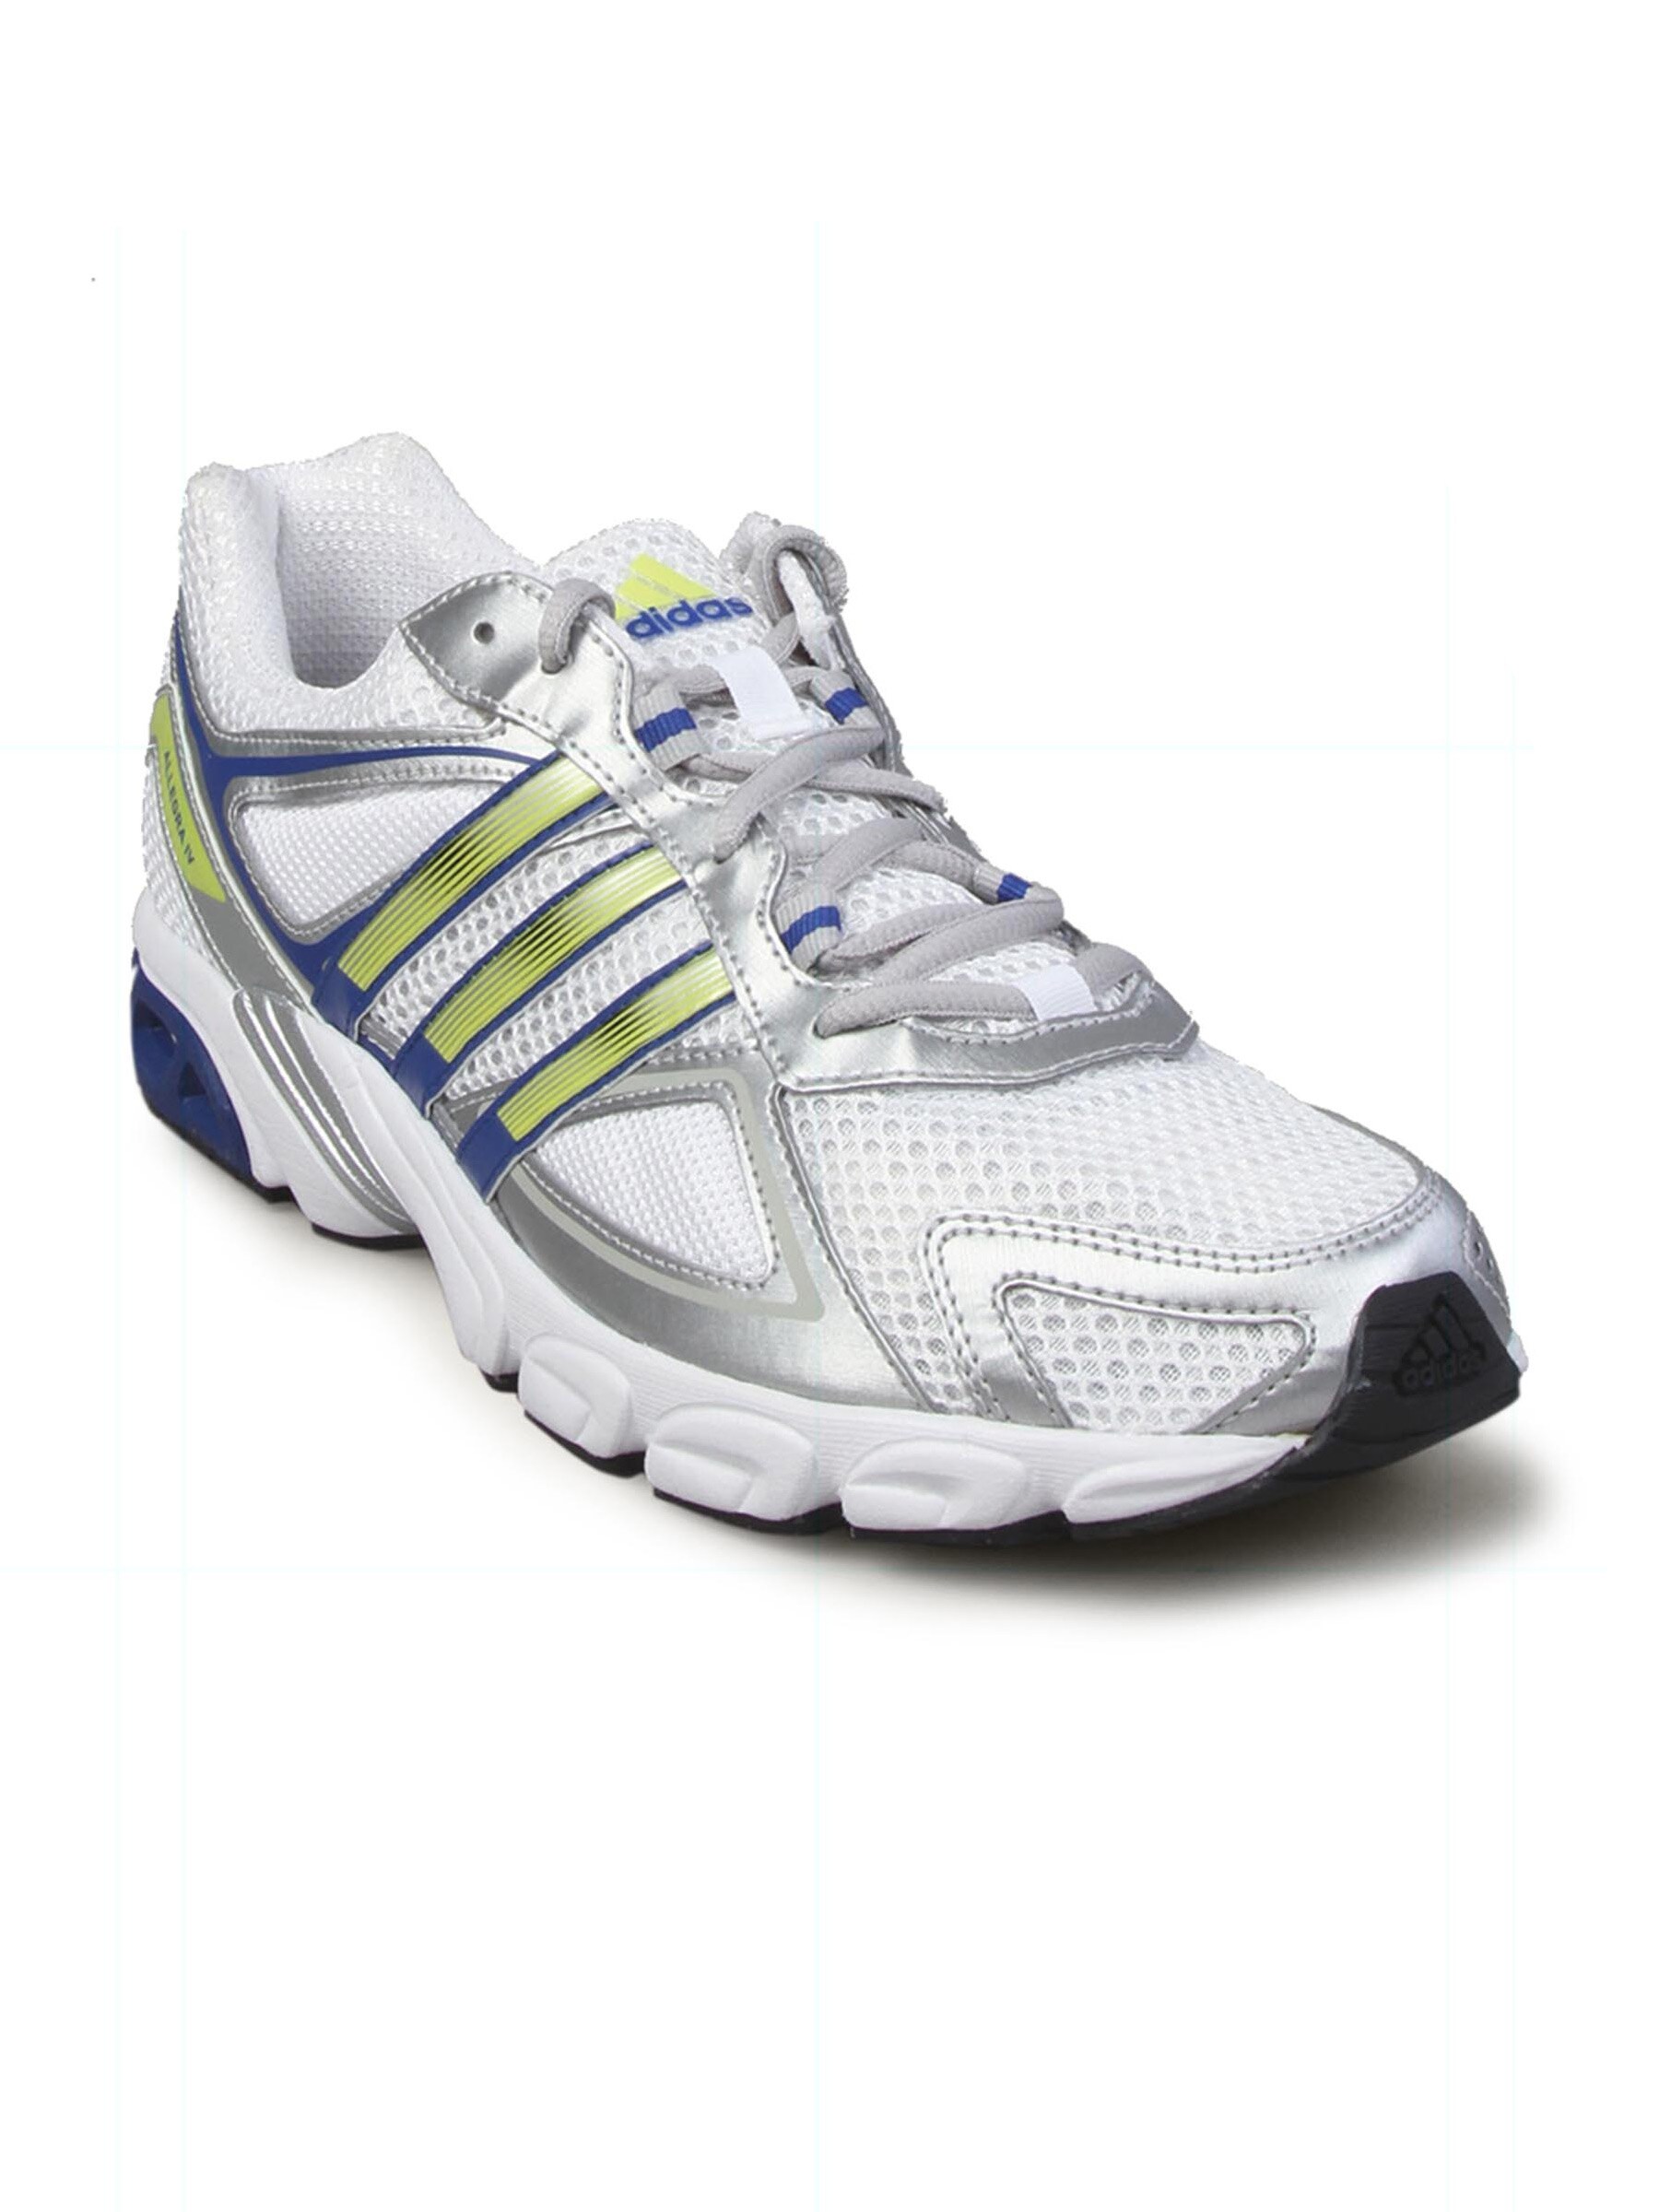 ADIDAS Men's White Silver Running Shoe